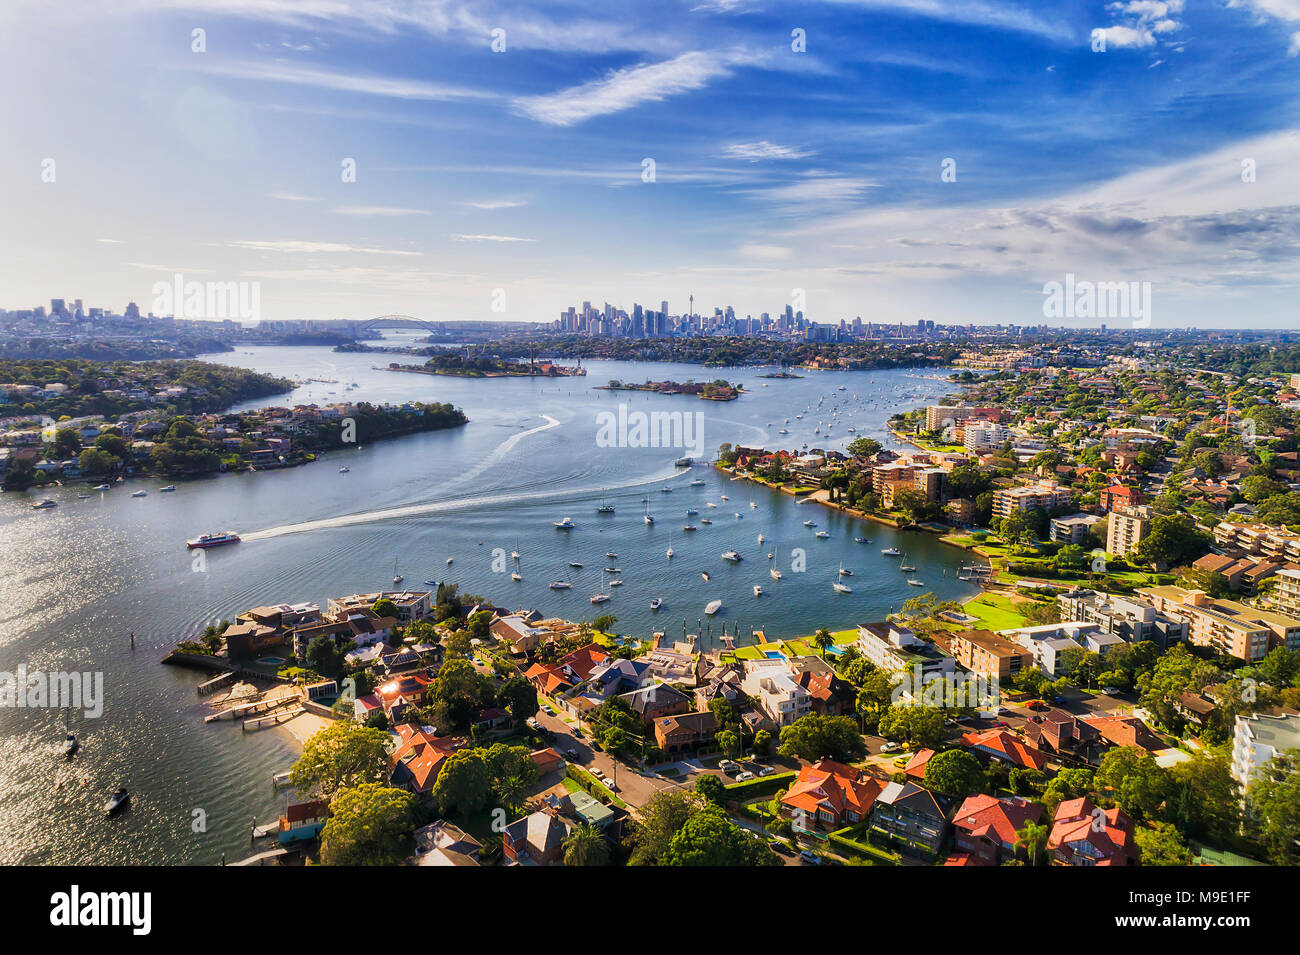 Sydney interna sobborgo occidentale Drummoyne e oltre sulle rive del fiume Parramatta che fluisce nel Sydney Harbour con città lontana CBD sull orizzonte in una elevata Foto Stock